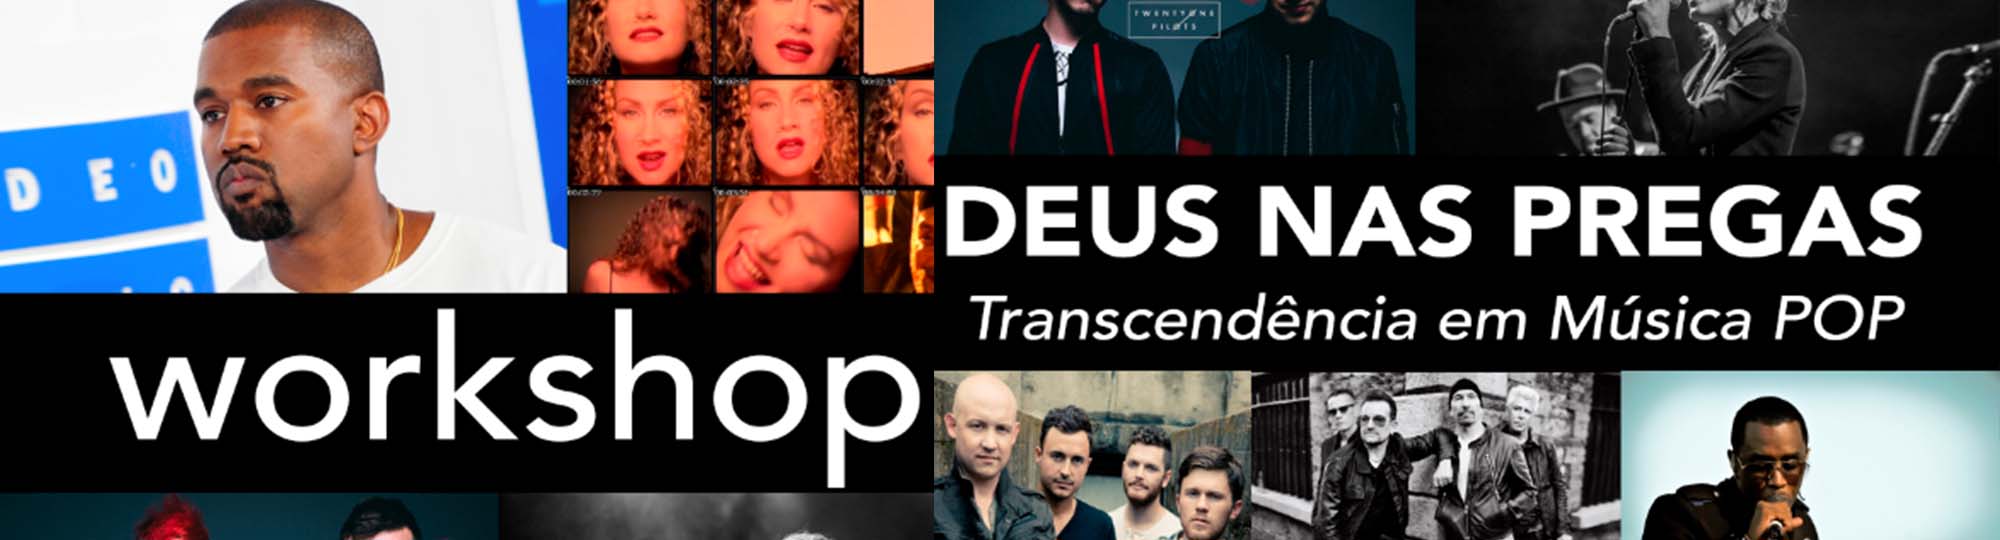 Deus nas “pregas” – Transcendência em Música Pop